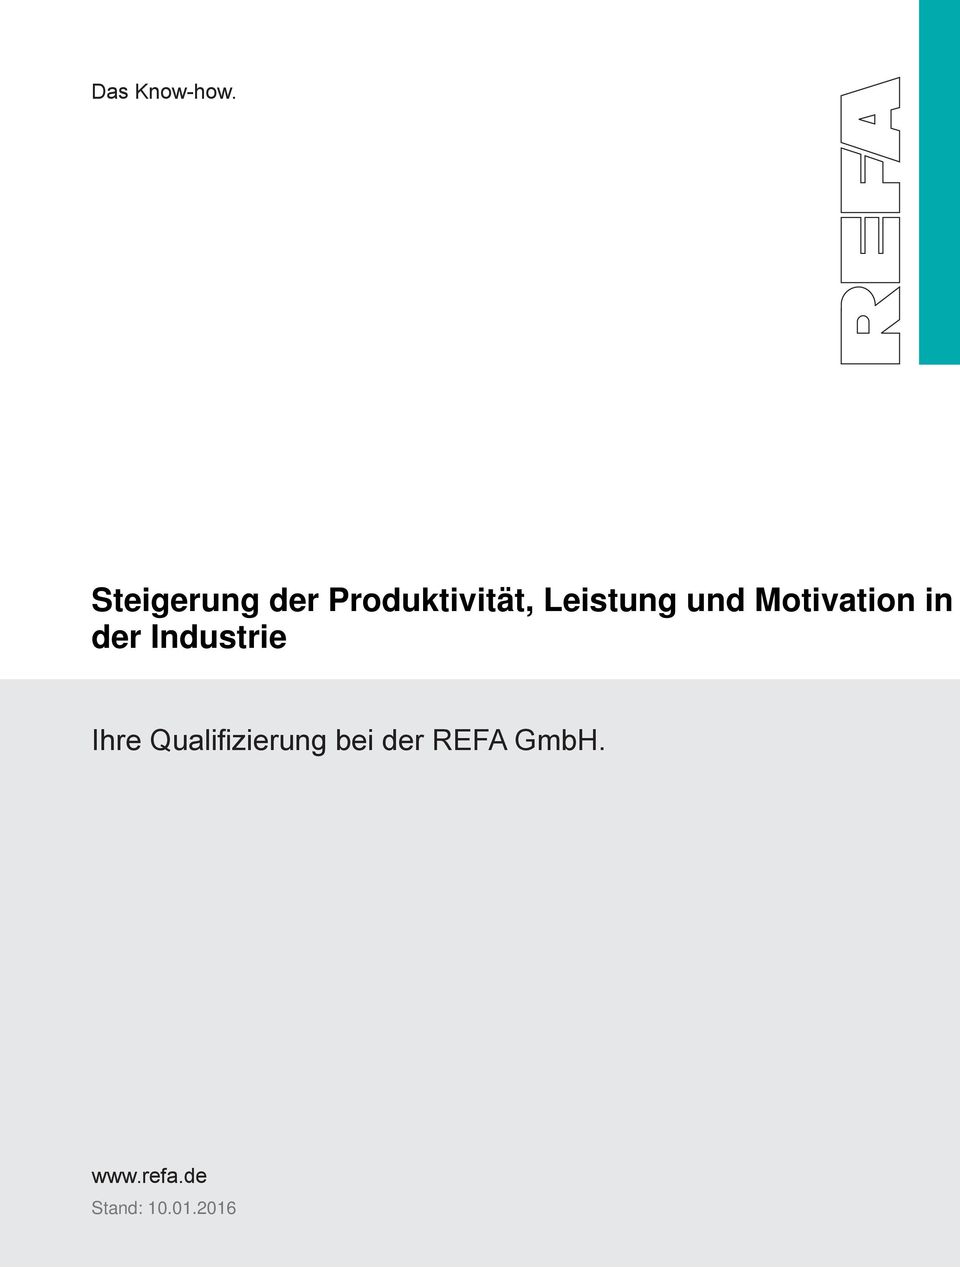 Qualifizierung bei der REFA GmbH.